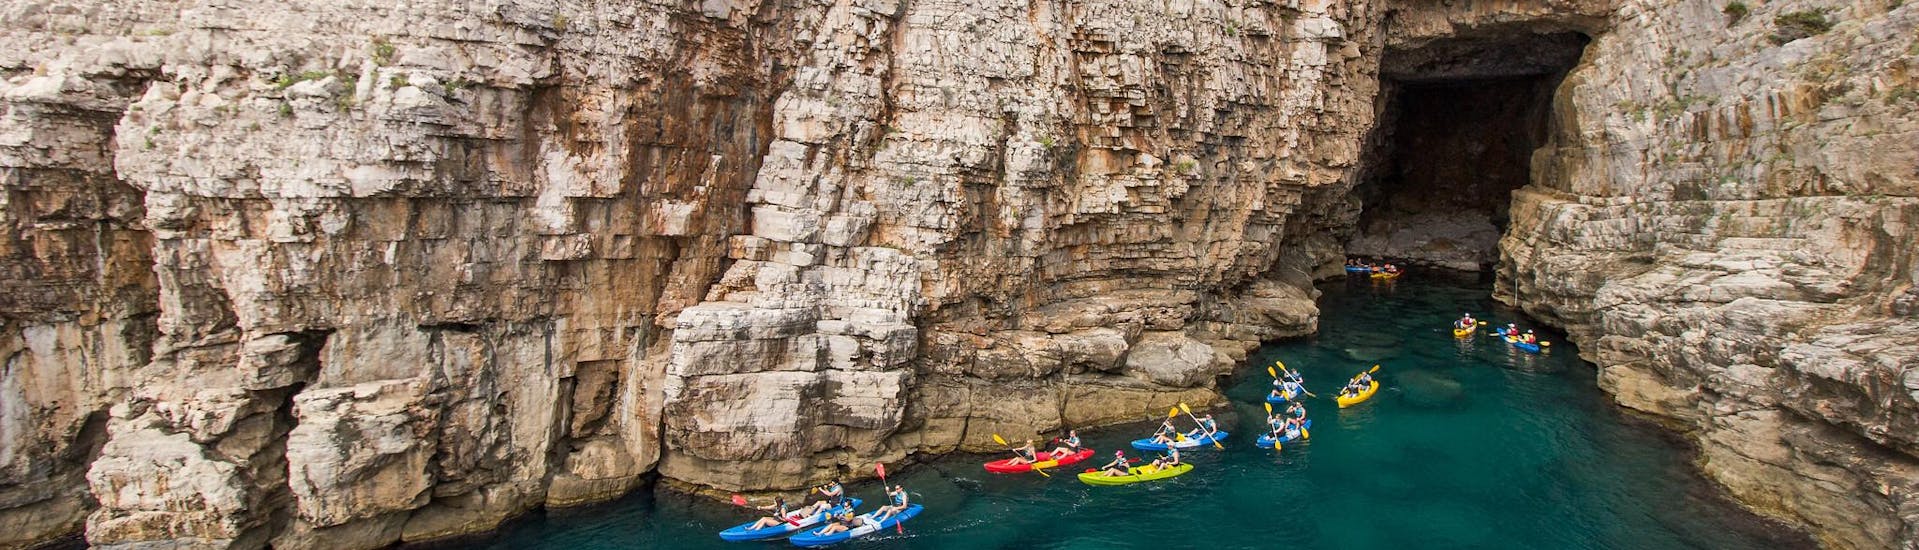 Gente pasándoselo en grande durante una excursión en kayak a las cuevas.